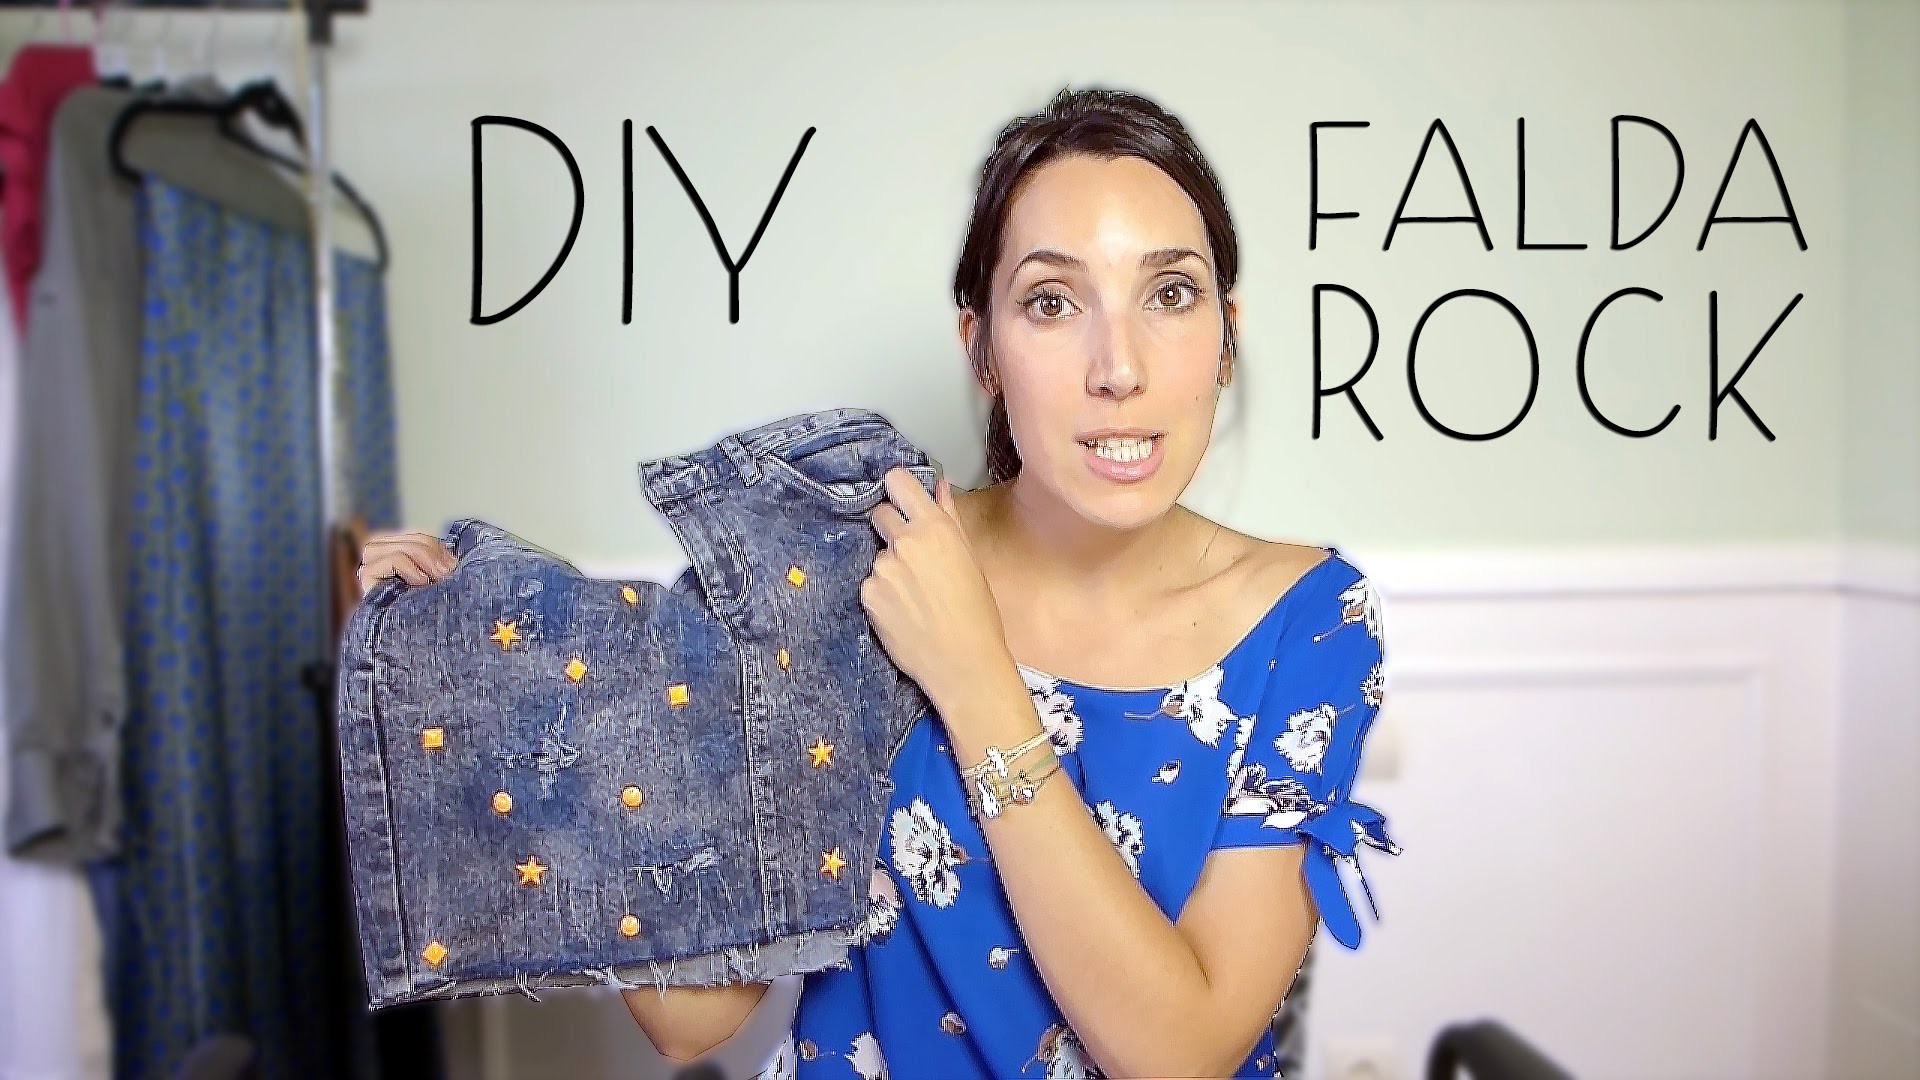 DIY Falda Vaquera con rotos y tachuelas | DIY Ripped Jeans with Studs